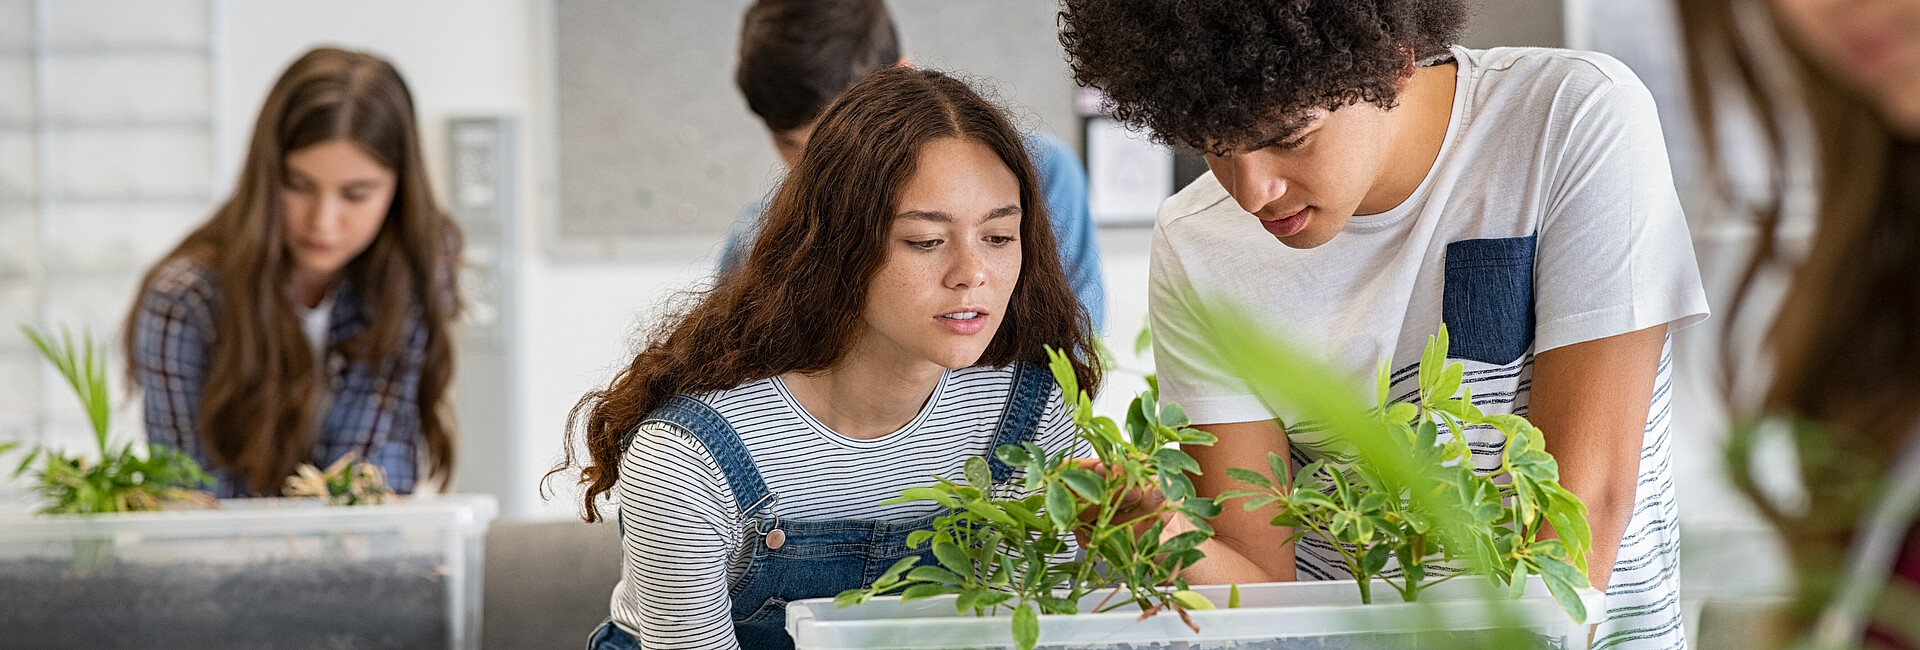 Man sieht eine Unterrichtssituation. Ein Junge und ein Mädchen blicken in eine Kiste mit Pflanzen.